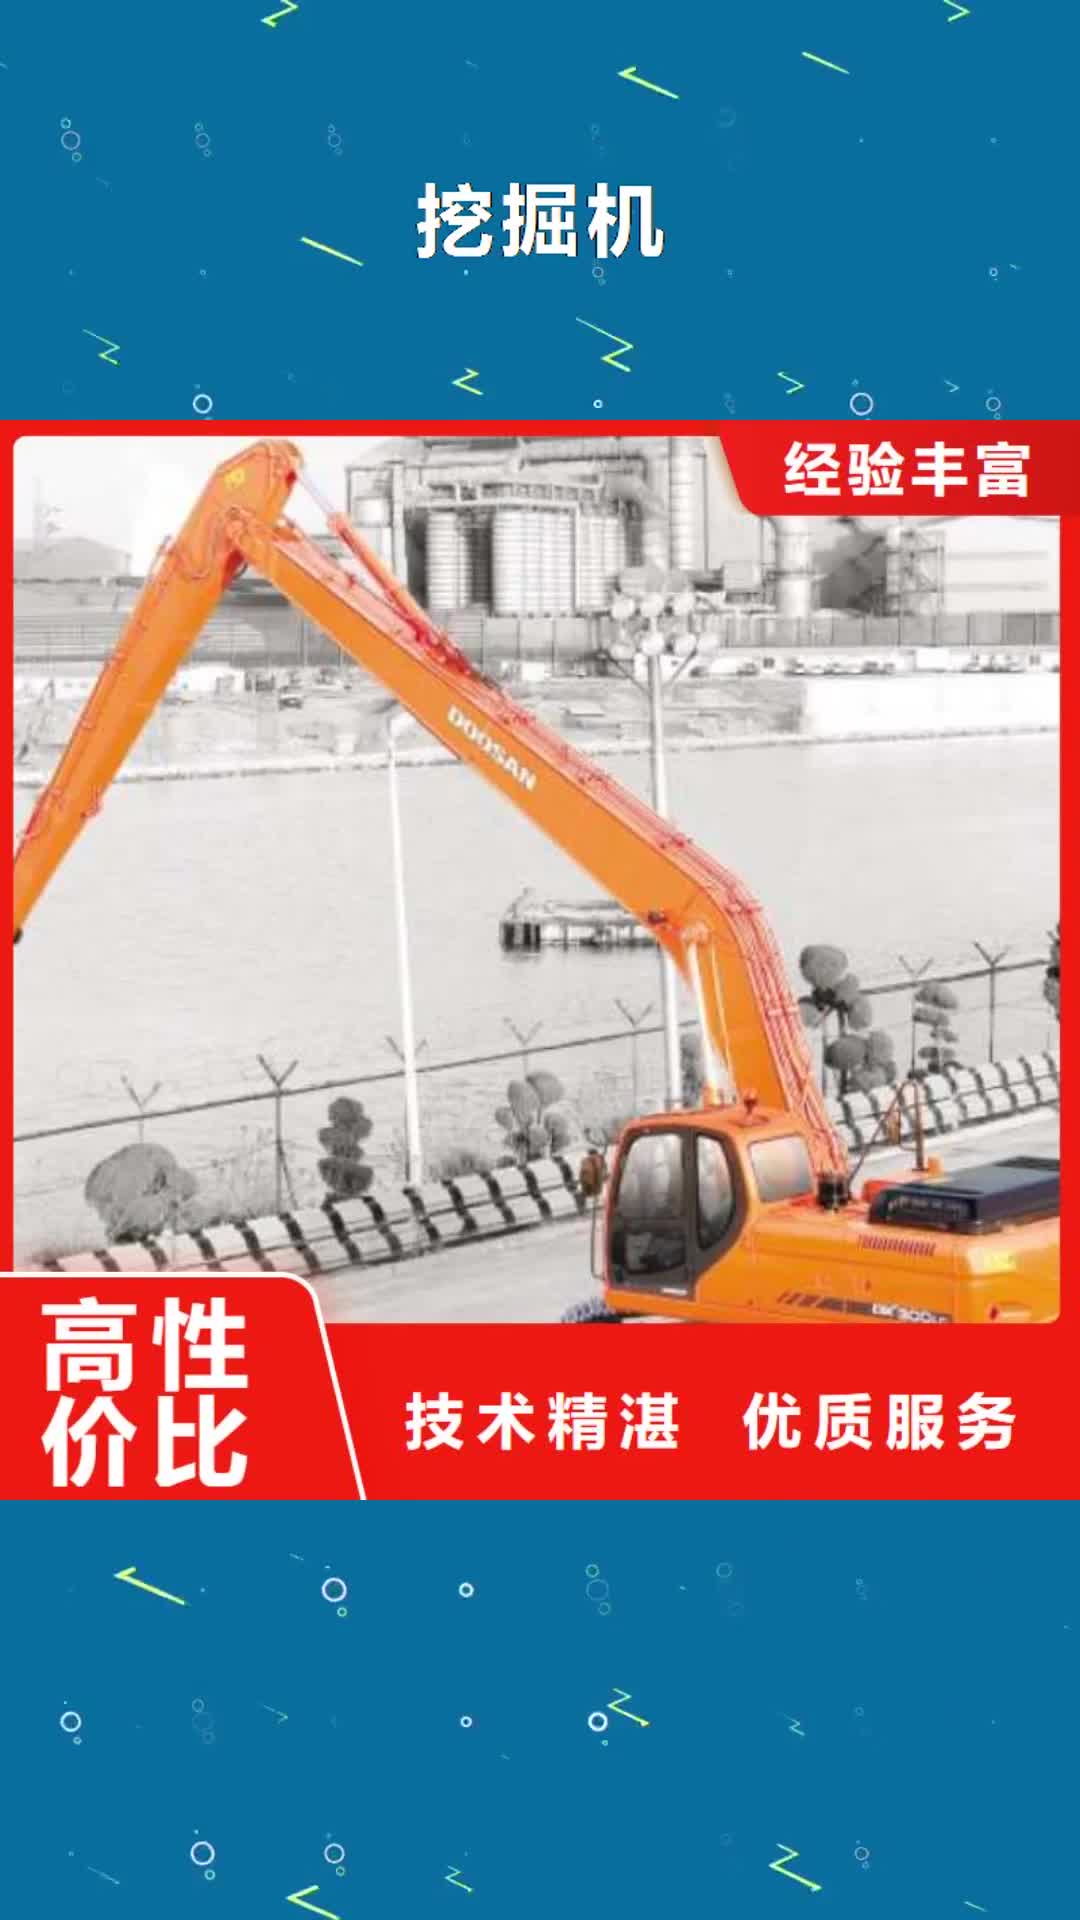 河南【挖掘机】23米加长臂挖掘机租赁24小时为您服务